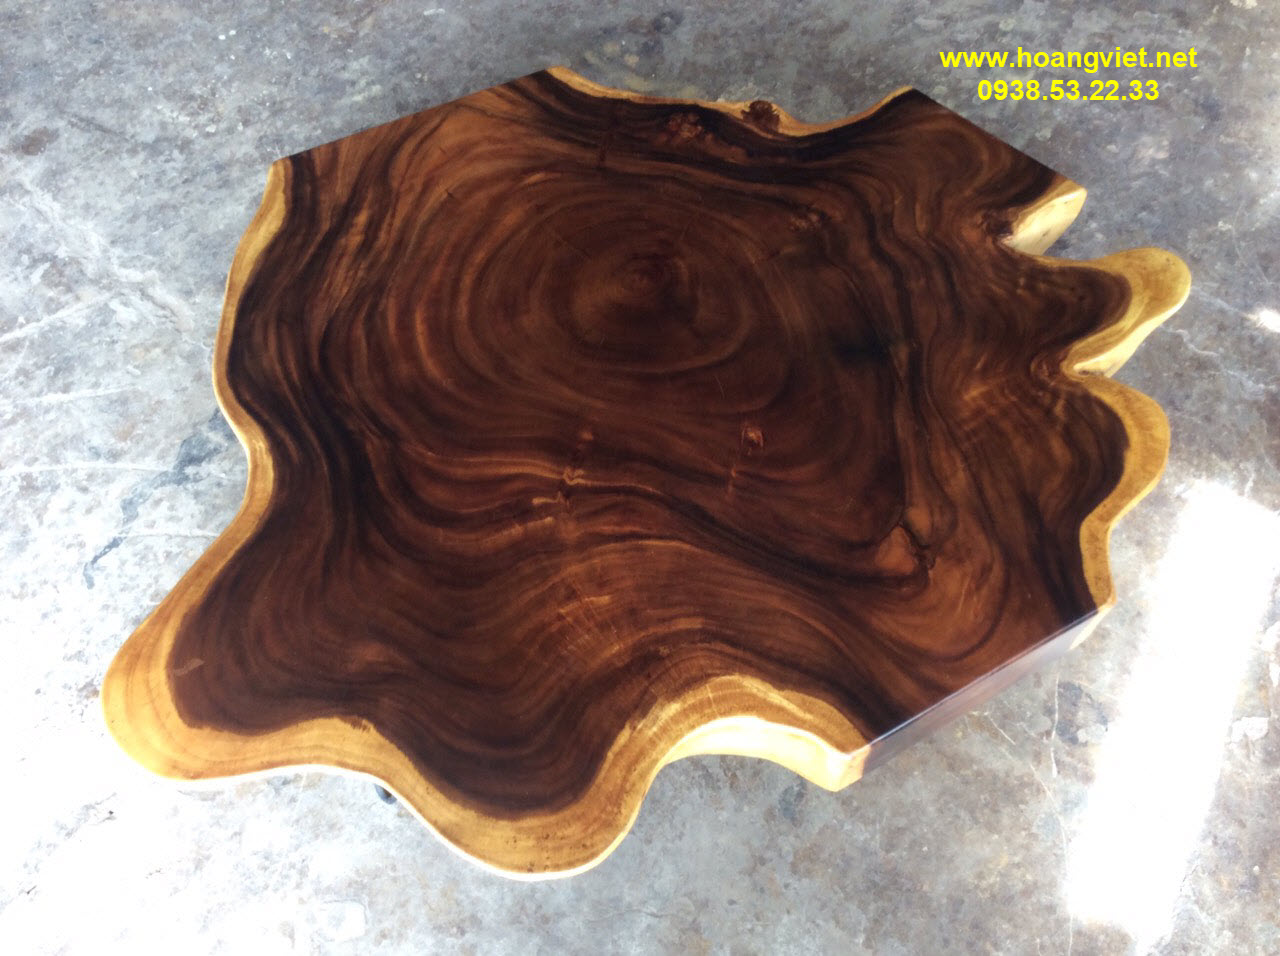 Mẫu bàn trà gỗ tự nhiên nguyên khối không những đẹp mà còn nghệ thuật